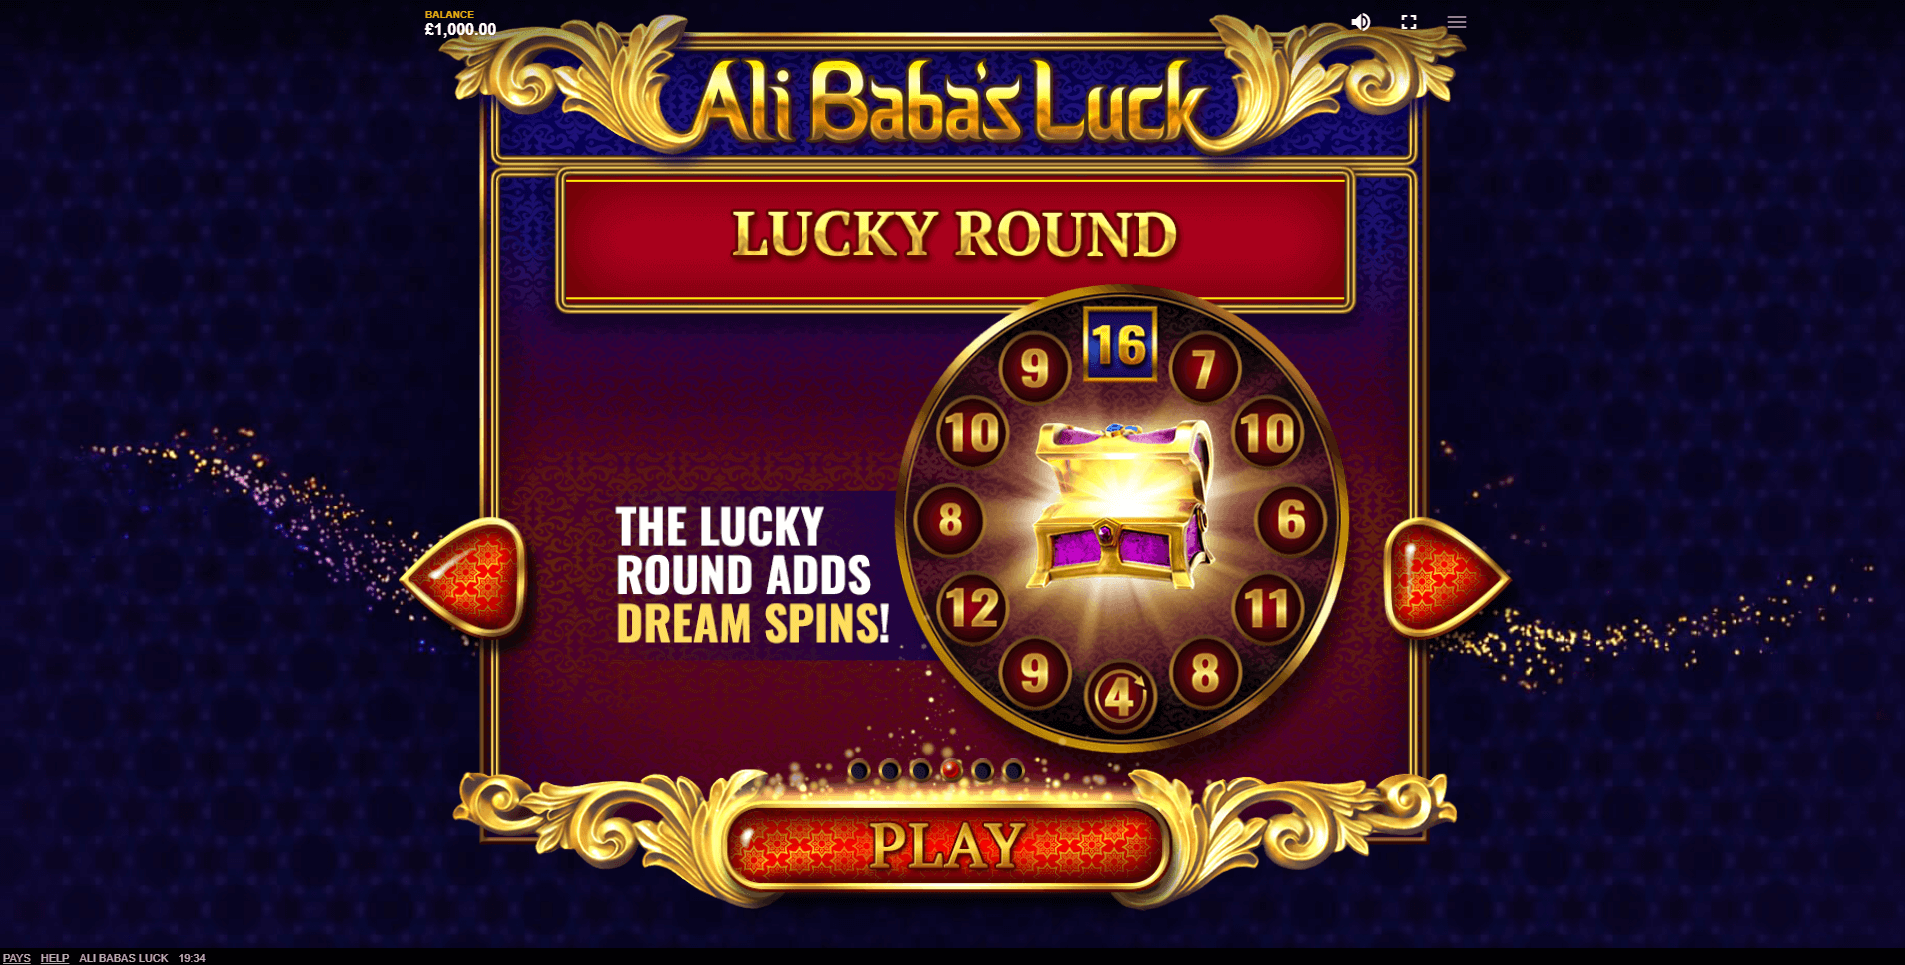 ali babas luck slot machine detail image 2